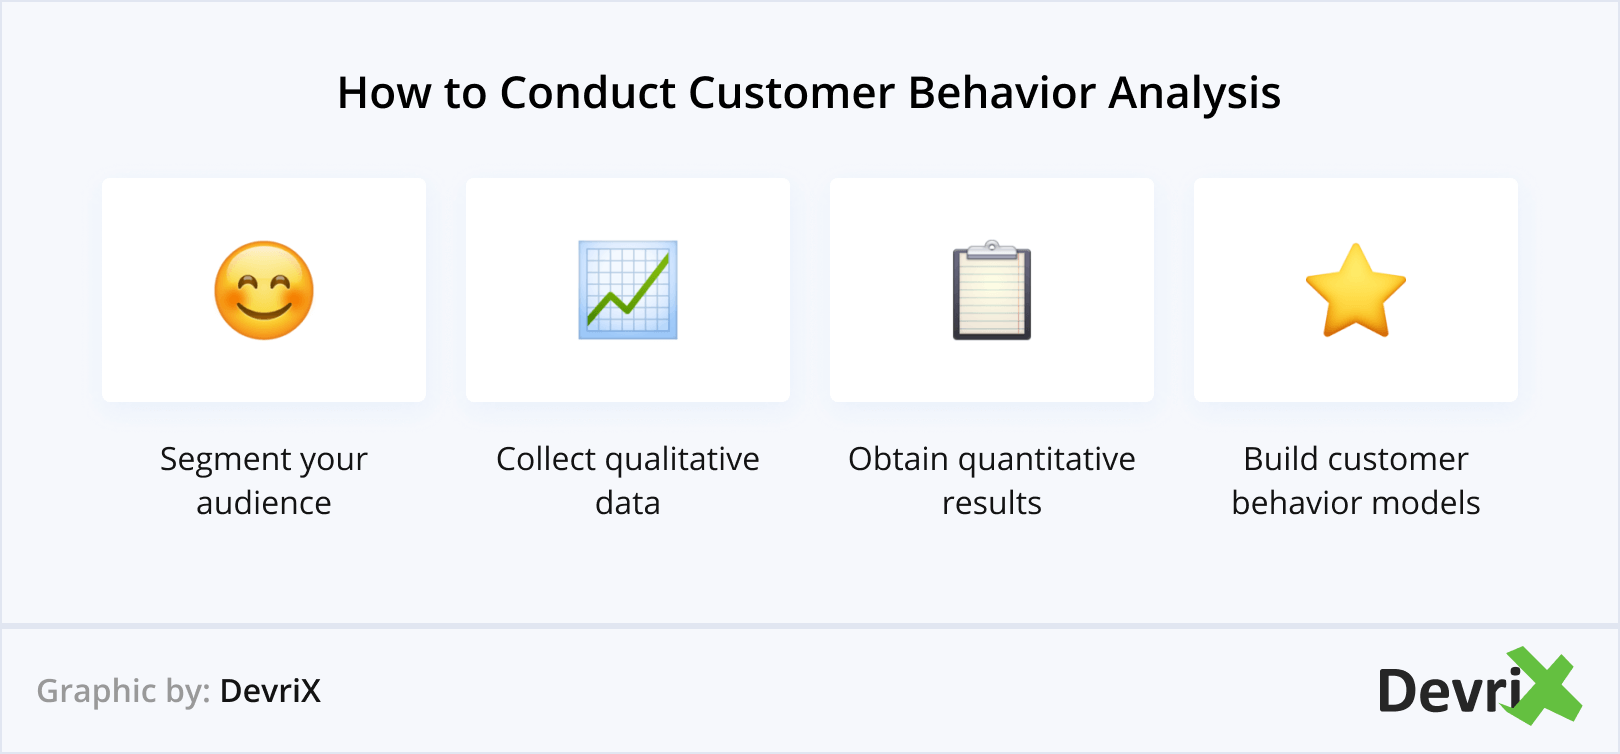 How to Conduct Customer Behavior Analysis